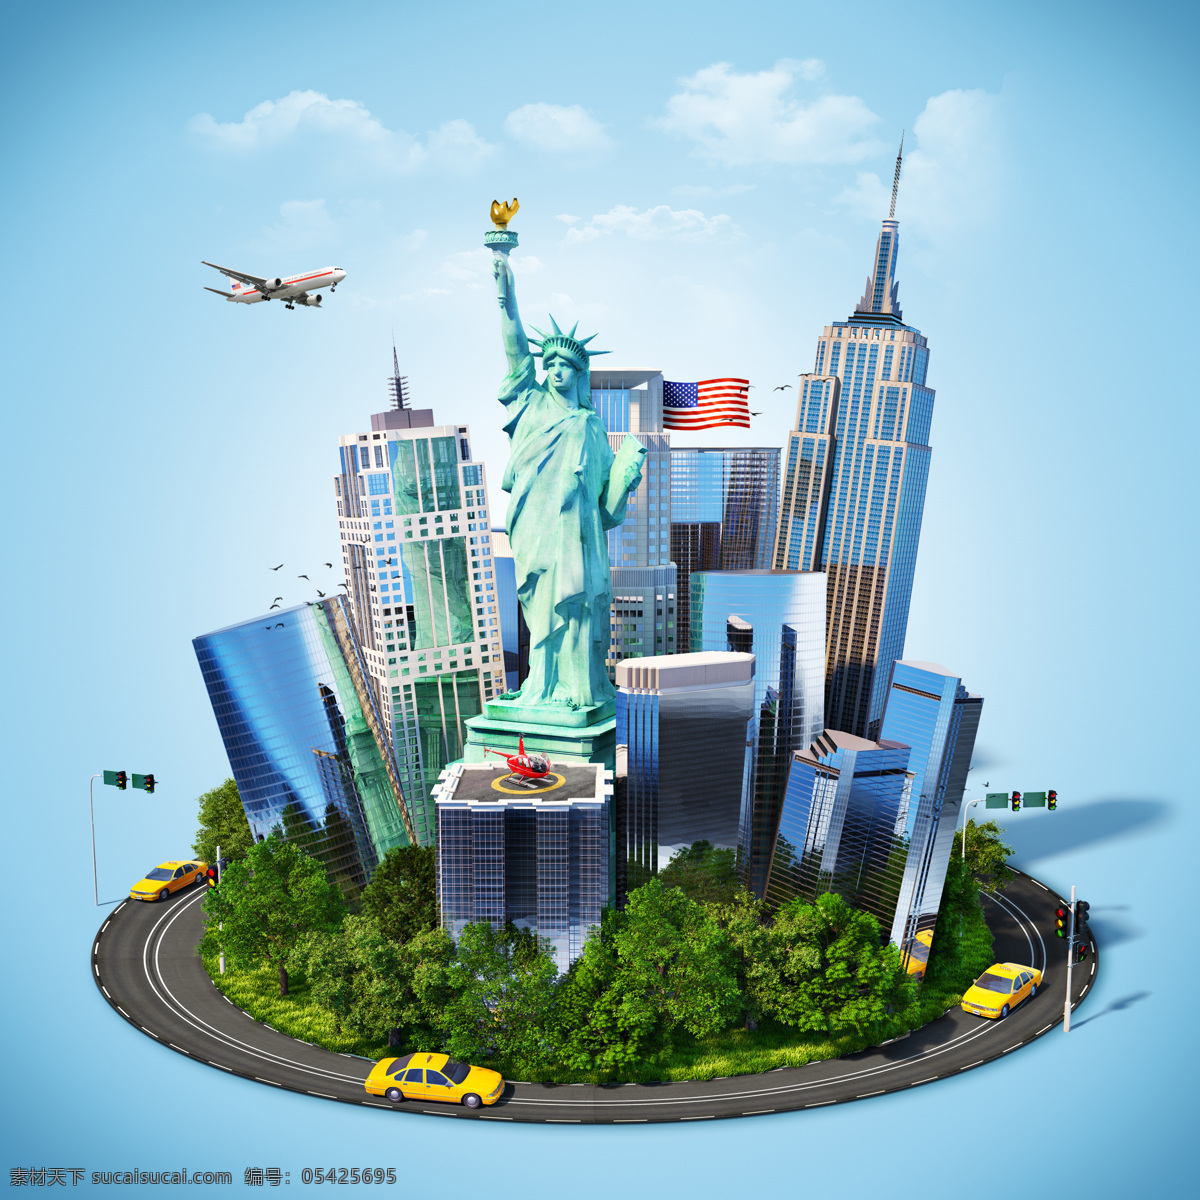 自由 女神像 高楼大厦 美国旅游景点 城市建筑 自由女神像 其他类别 生活百科 青色 天蓝色